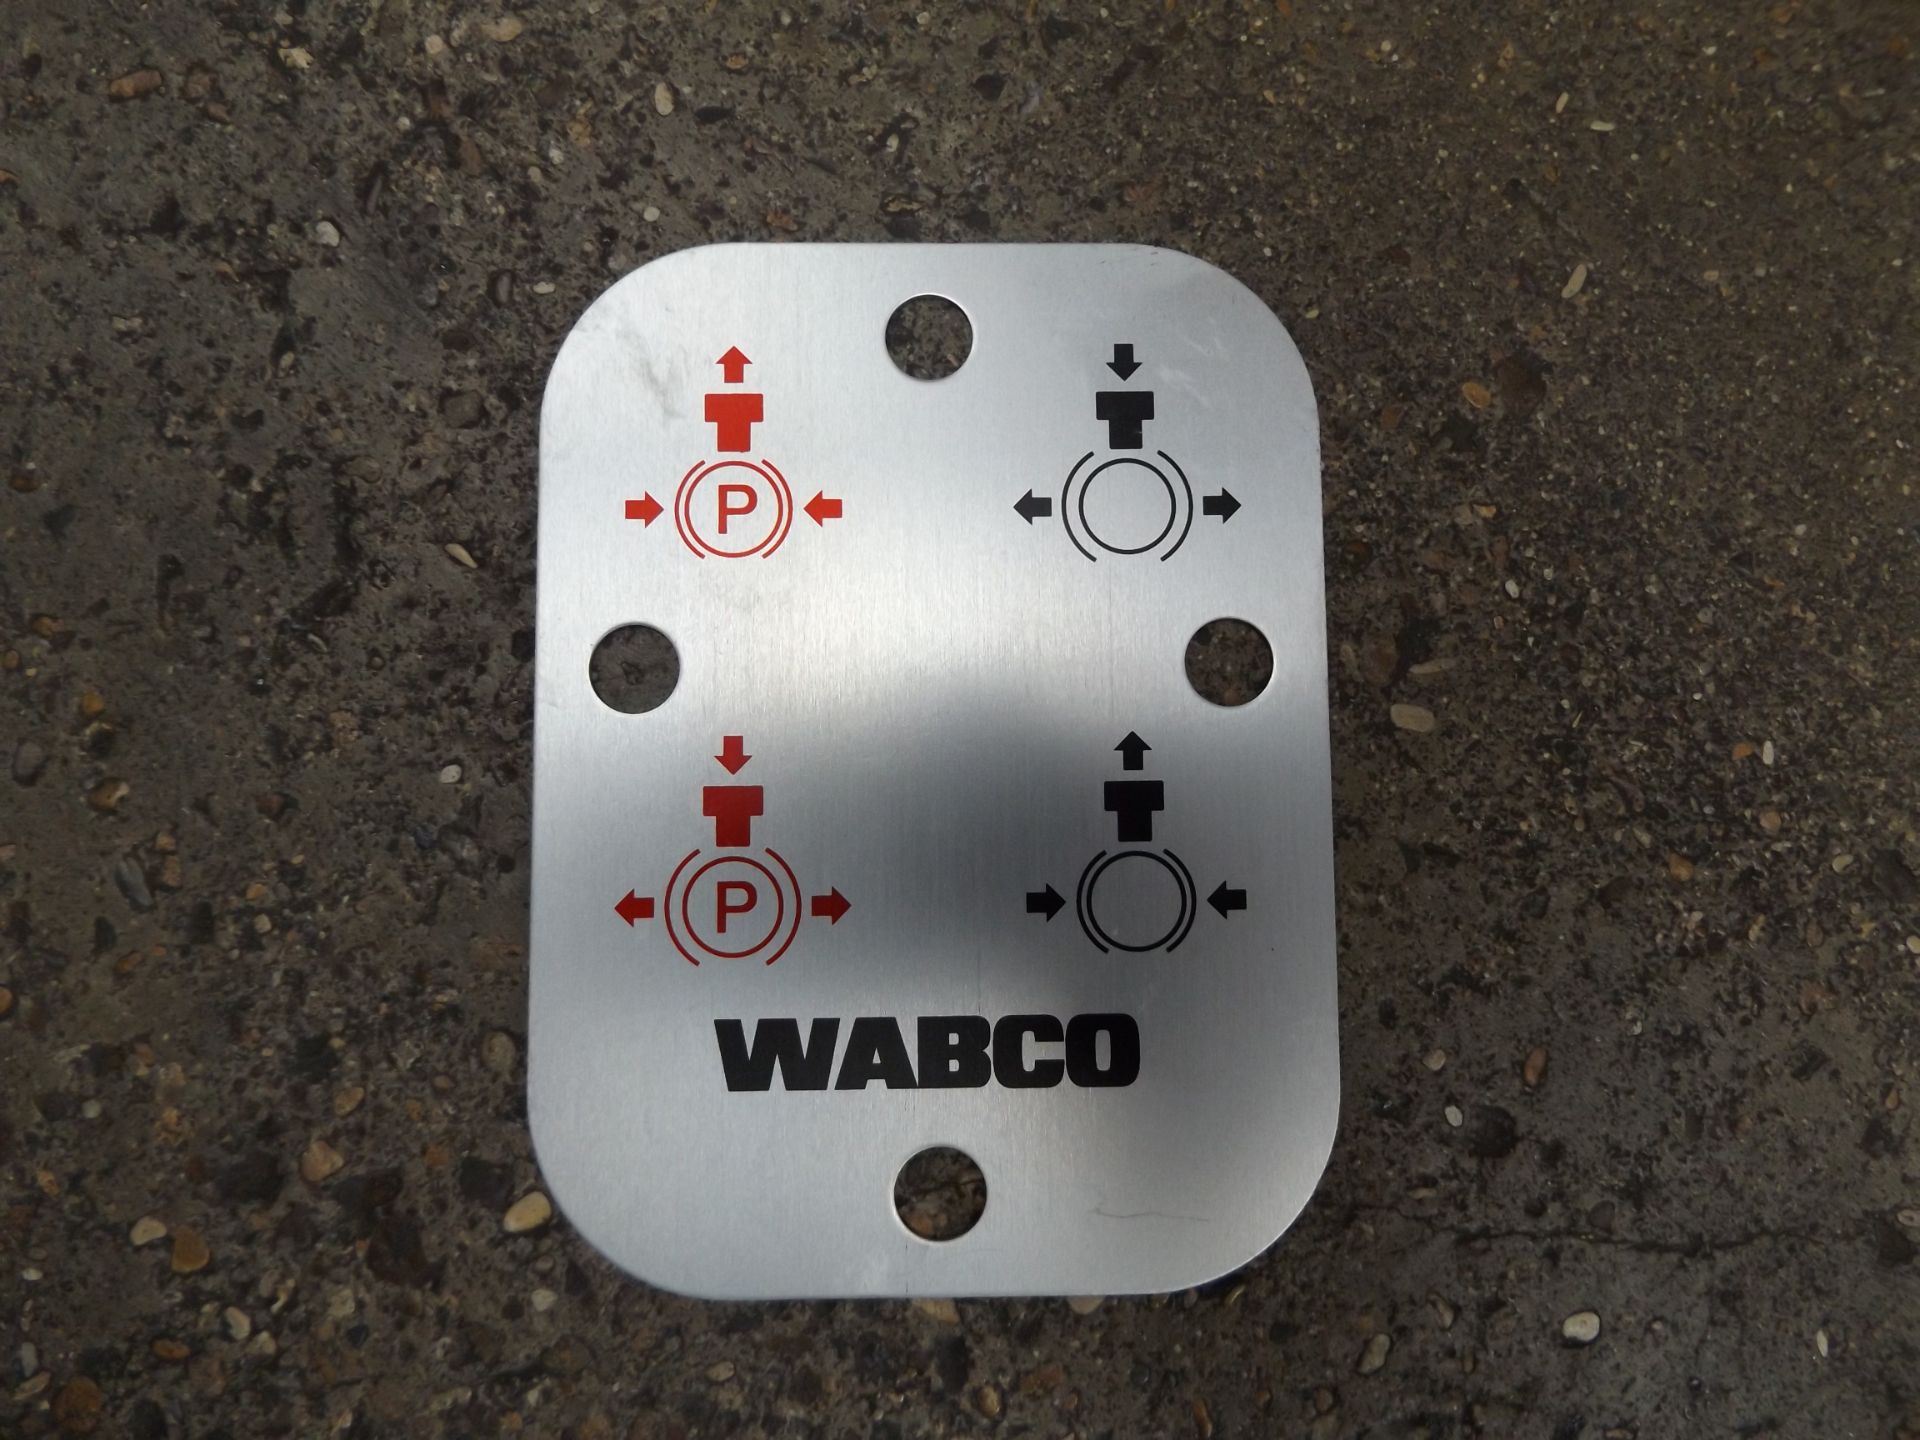 4 x Wabco Parking Brake Release Valves - Image 5 of 6